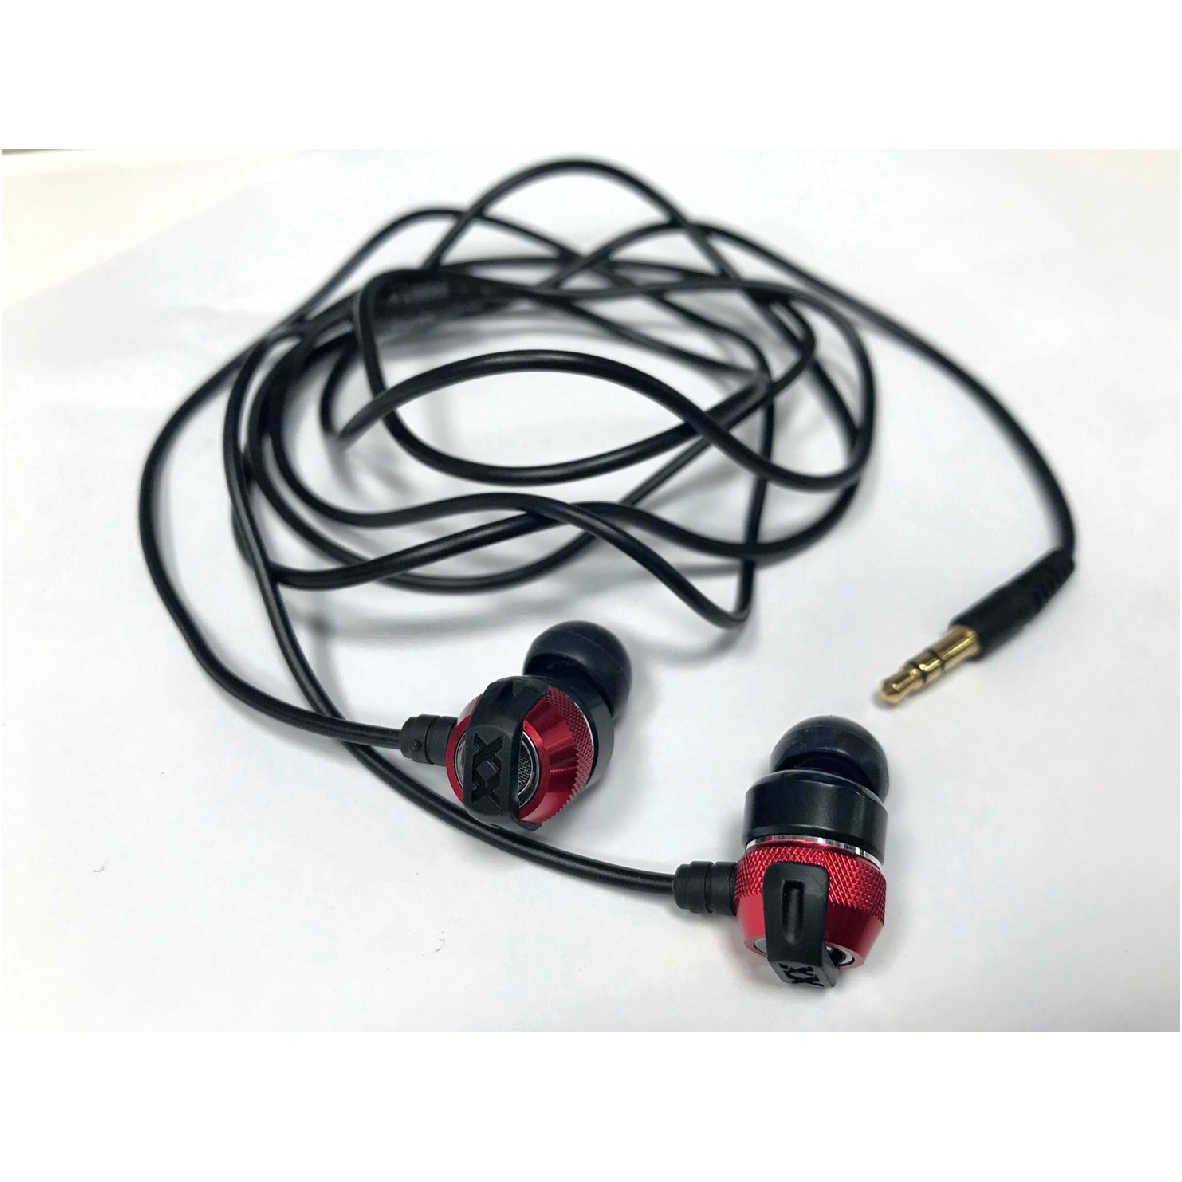 【福利機】JVC HA-FX33X 紅黑色 超重低音 噪音隔離 耳道式耳機 | 金曲音響